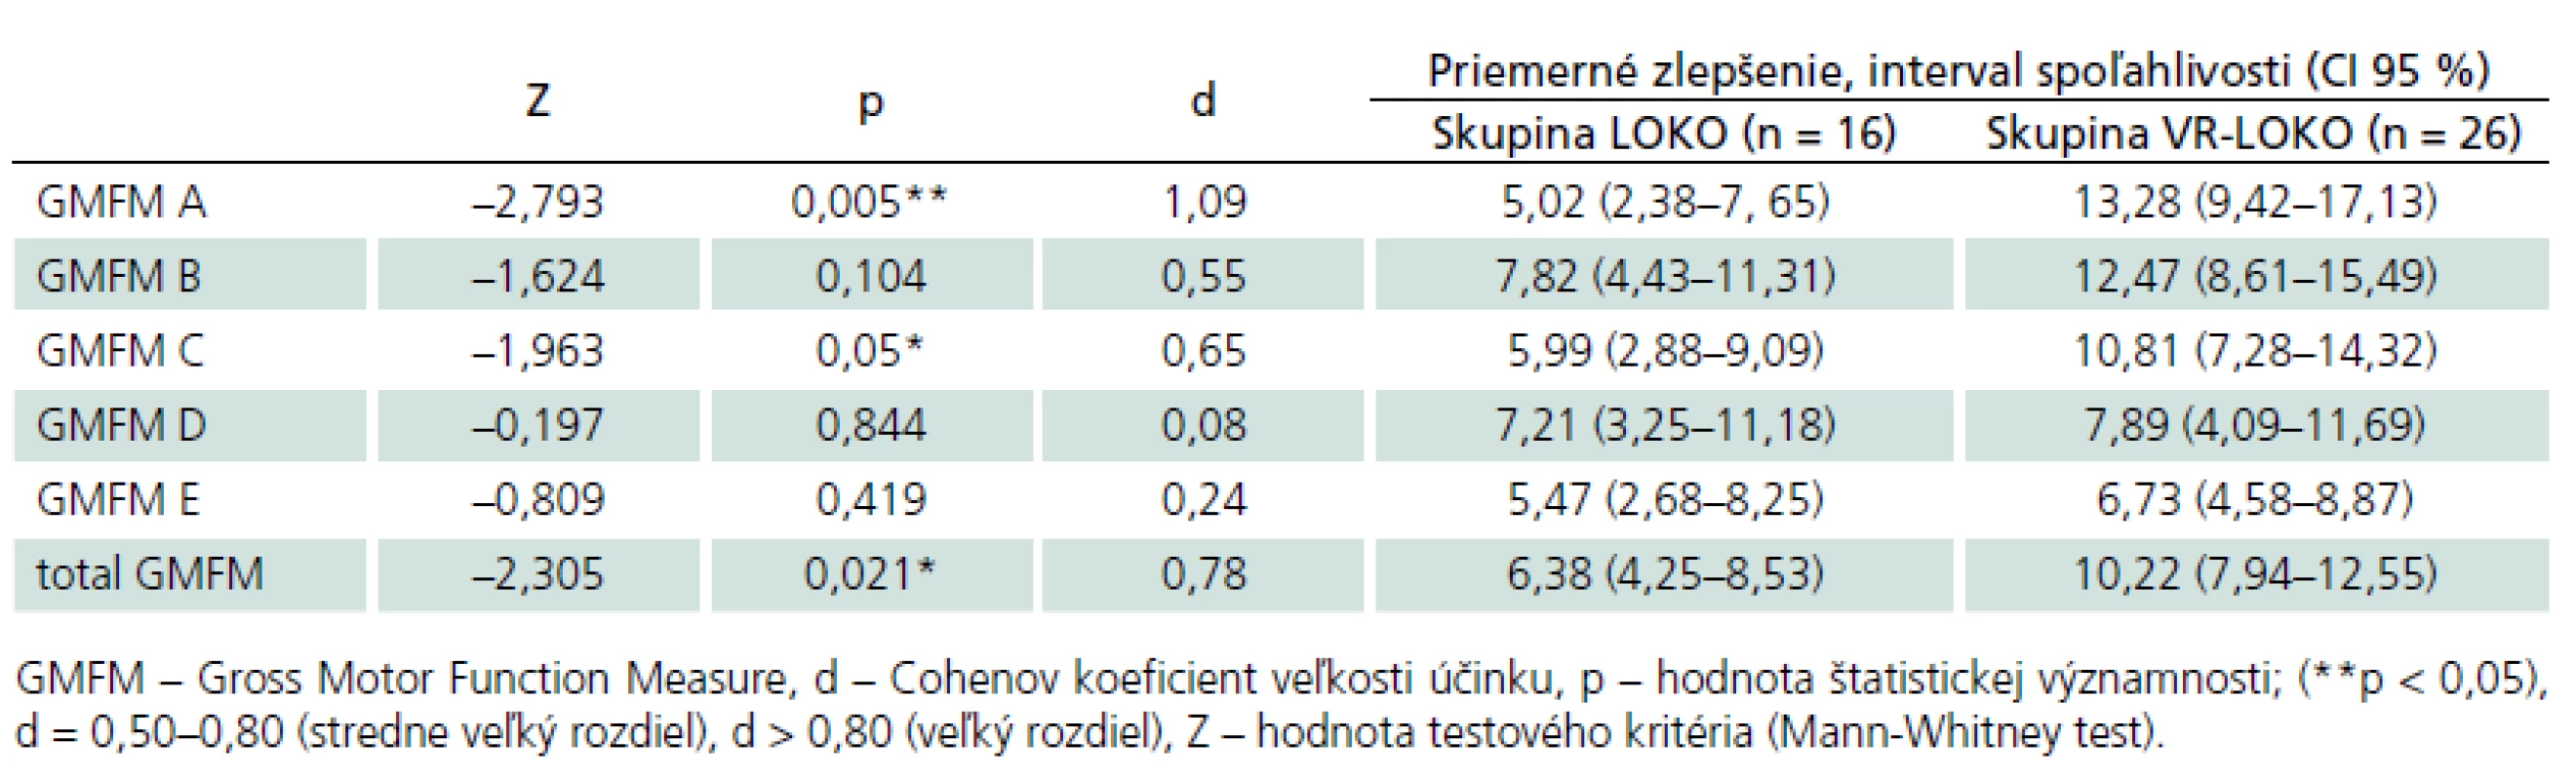 Porovnanie zlepšenia motorických funkcií v dimenziách A, B, C, D, E a celkového zlepšenia skóre GMFM-88 medzi skupinami LOKO a VR-LOKO po 20 TJ.